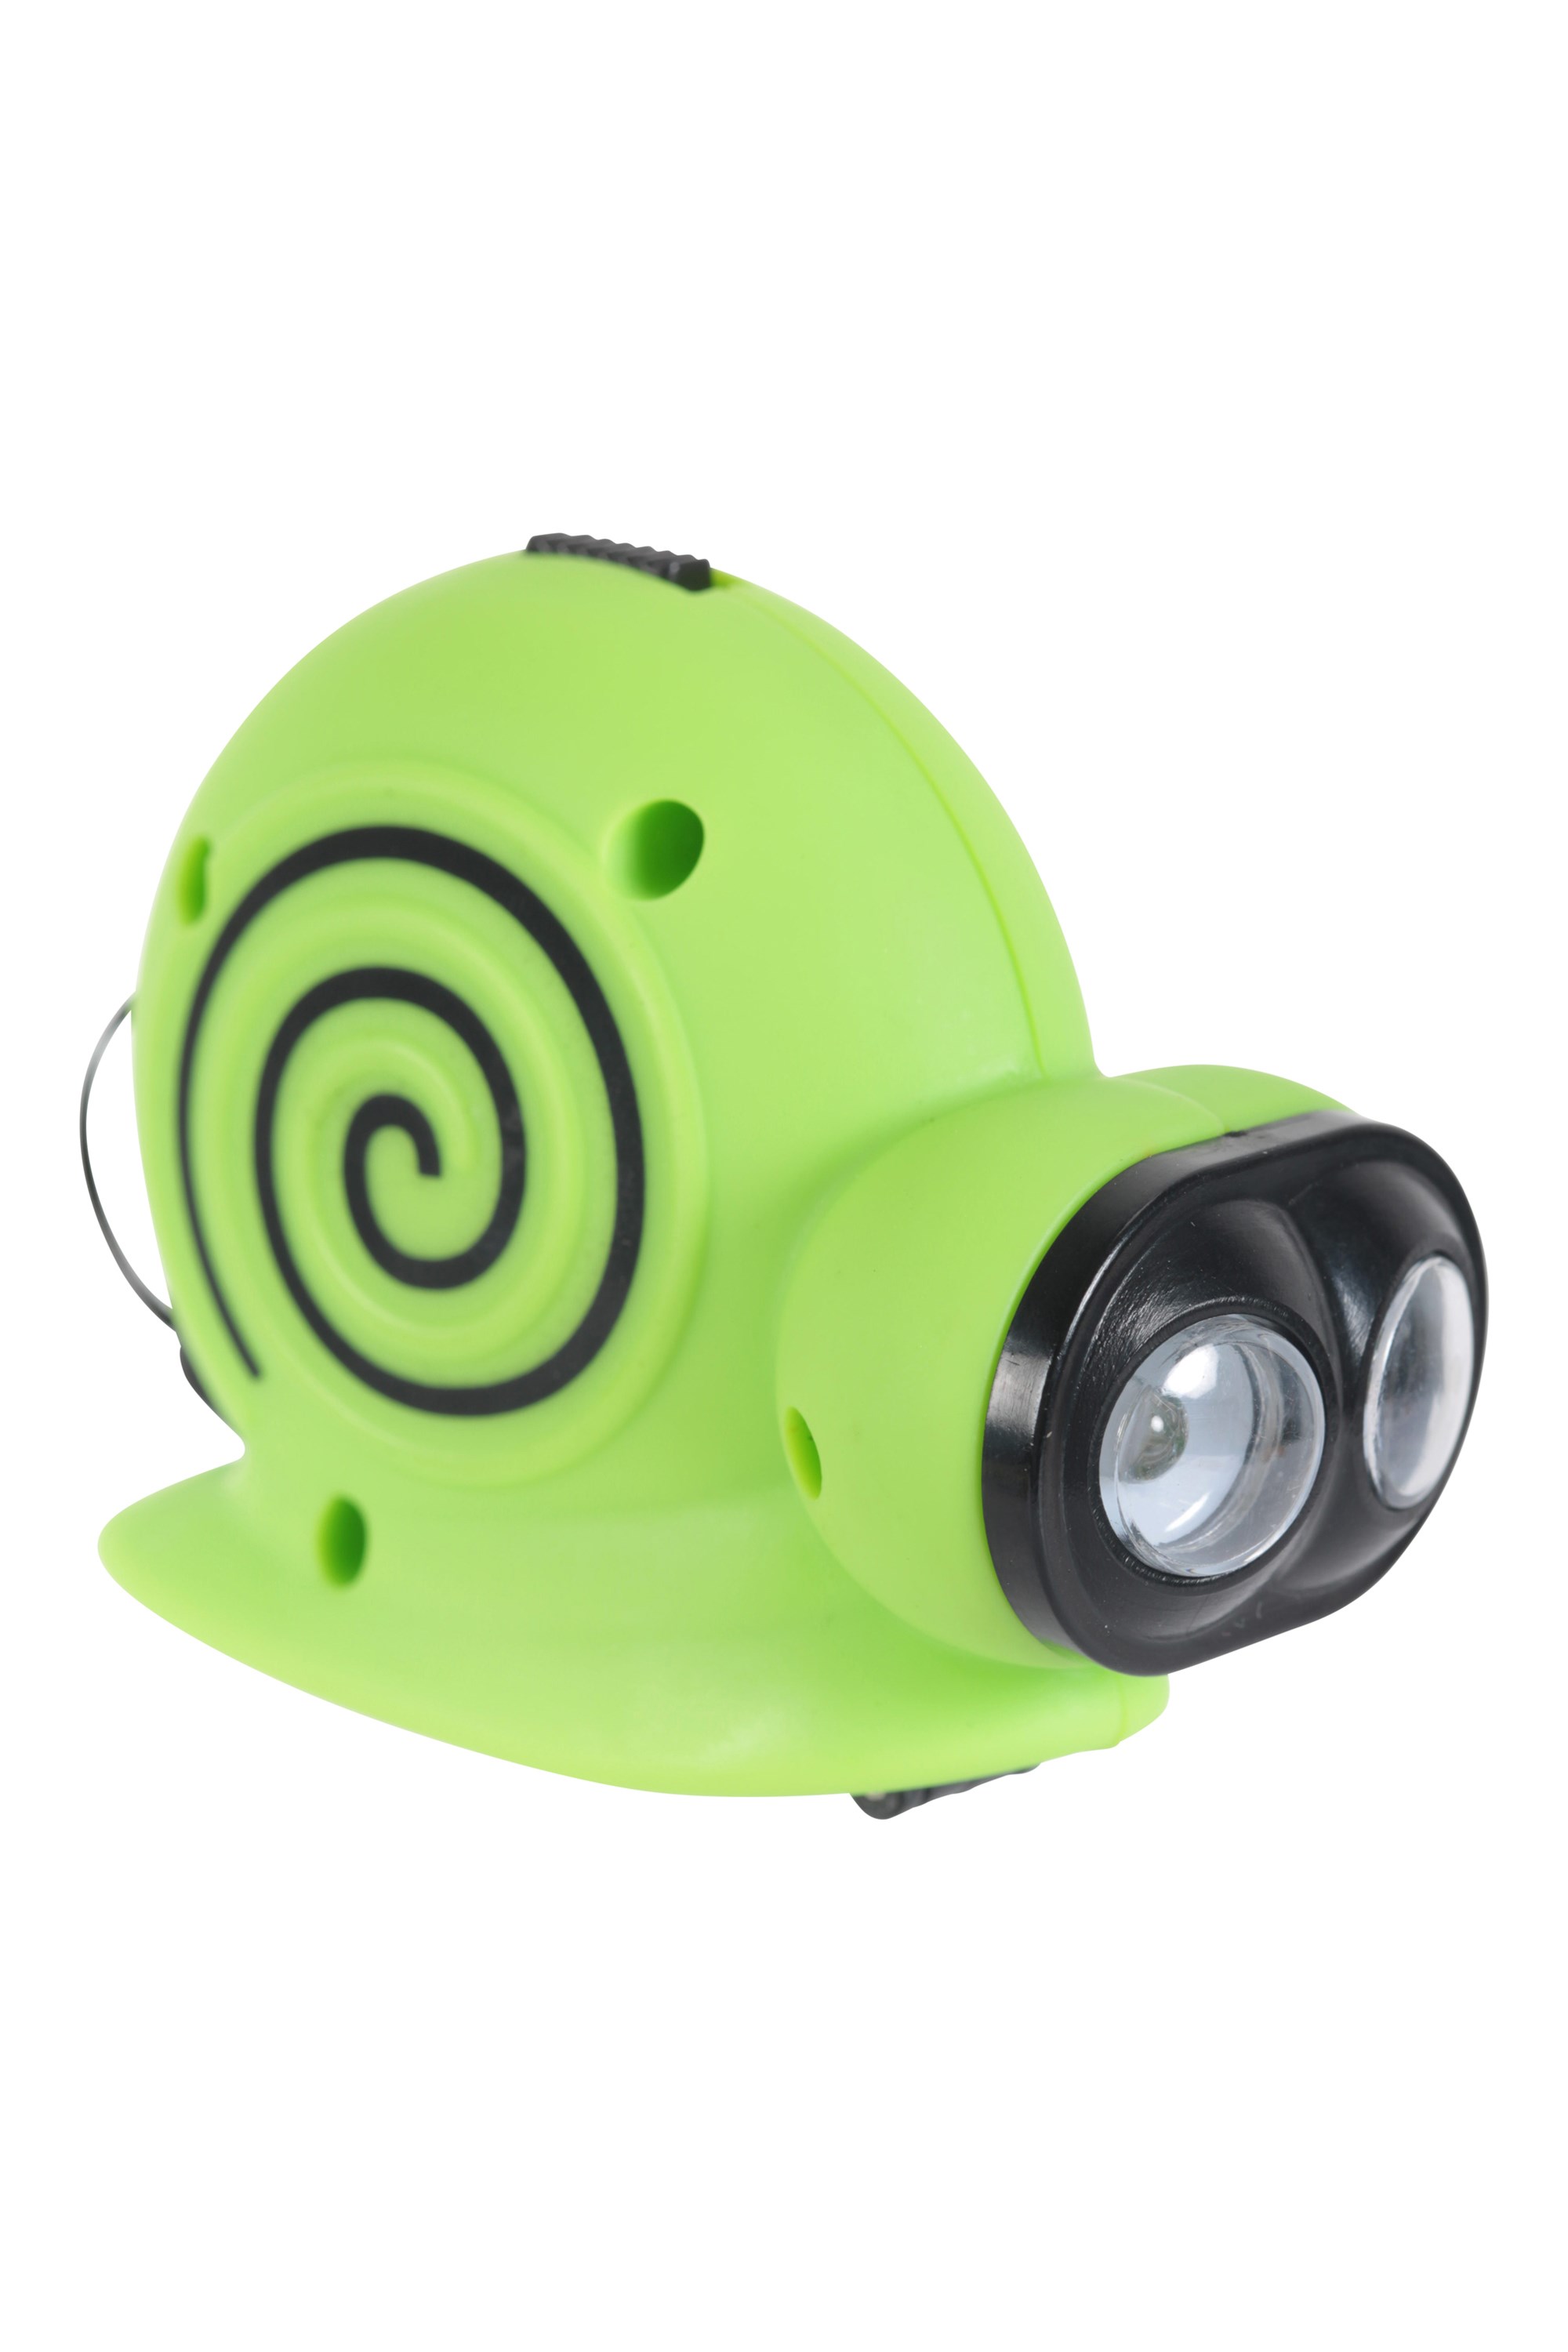 Snail Dynamo Torch - Green